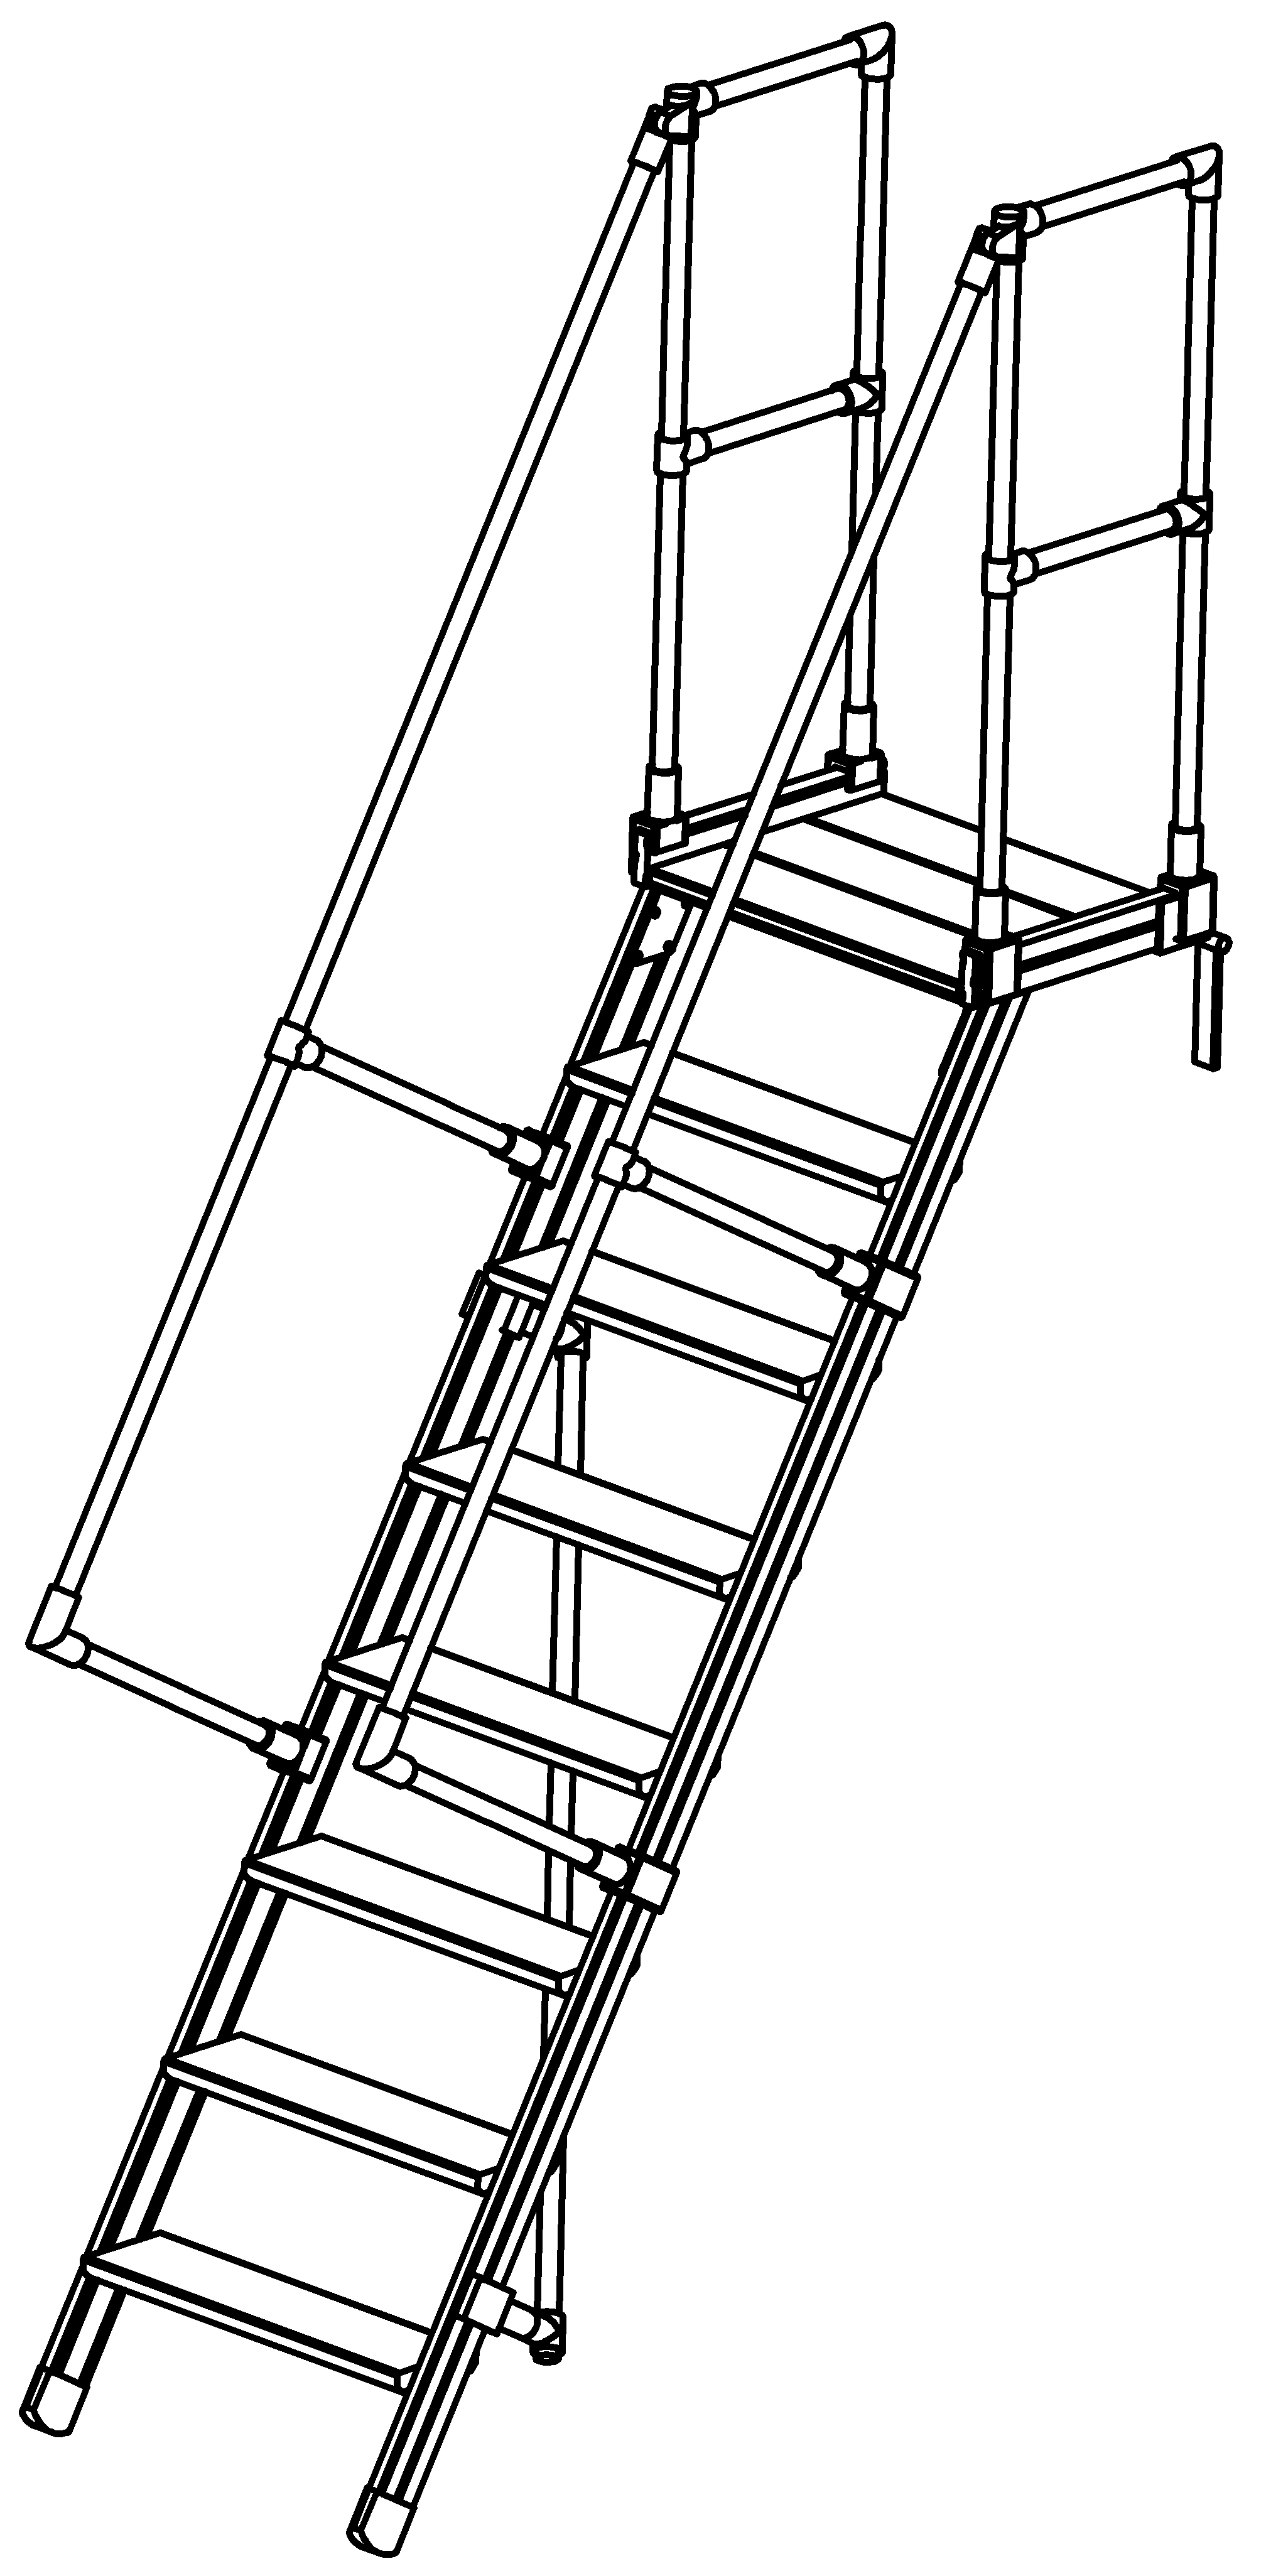 Podesttreppen ohne Stützteil, LW 600, Stufen aus Alu, Neigung 60°